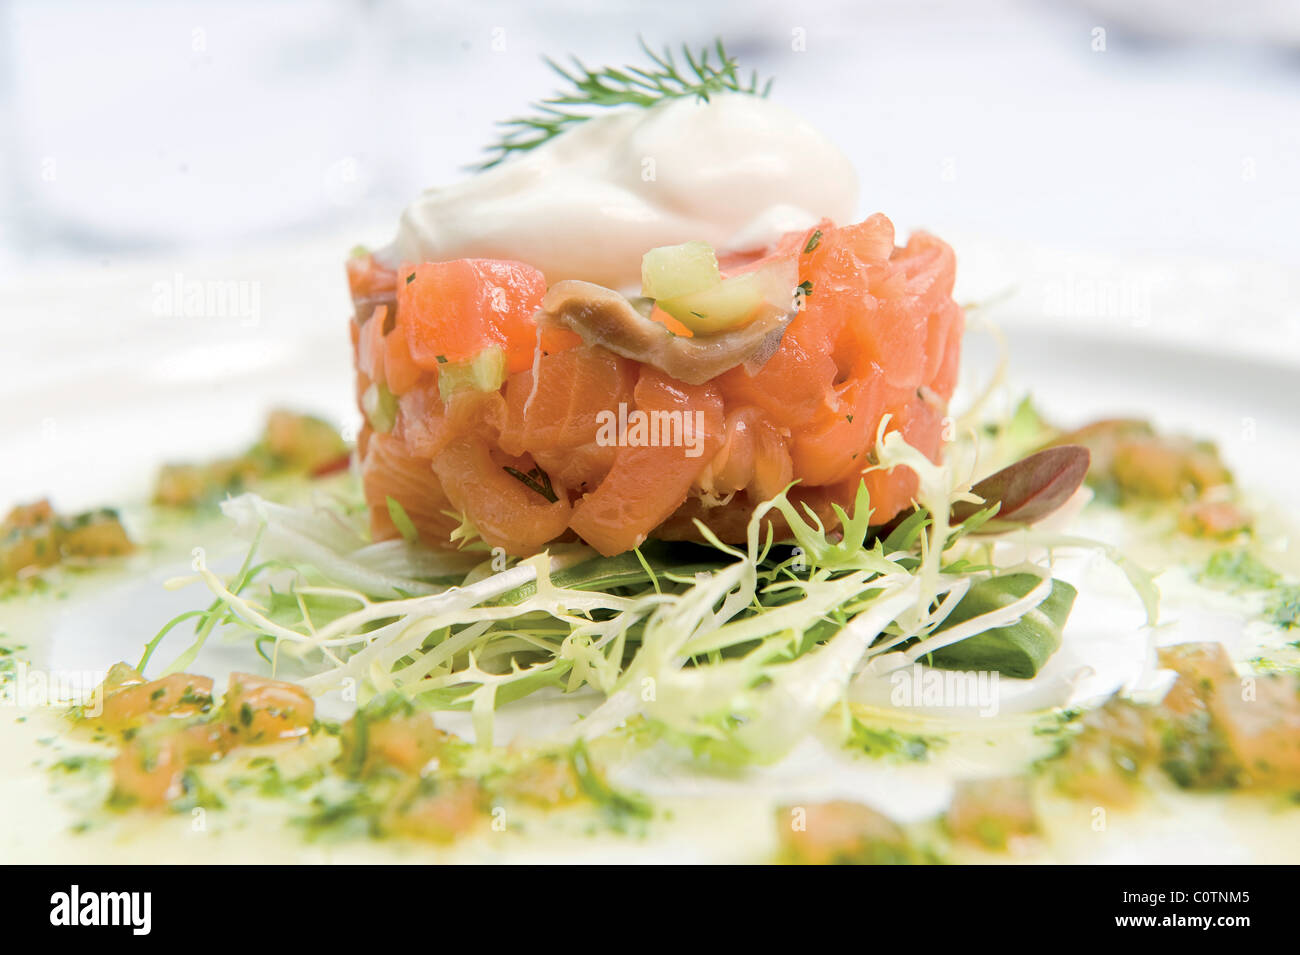 Le saumon sauvage séché avec de raifort et crème fraîche. Banque D'Images